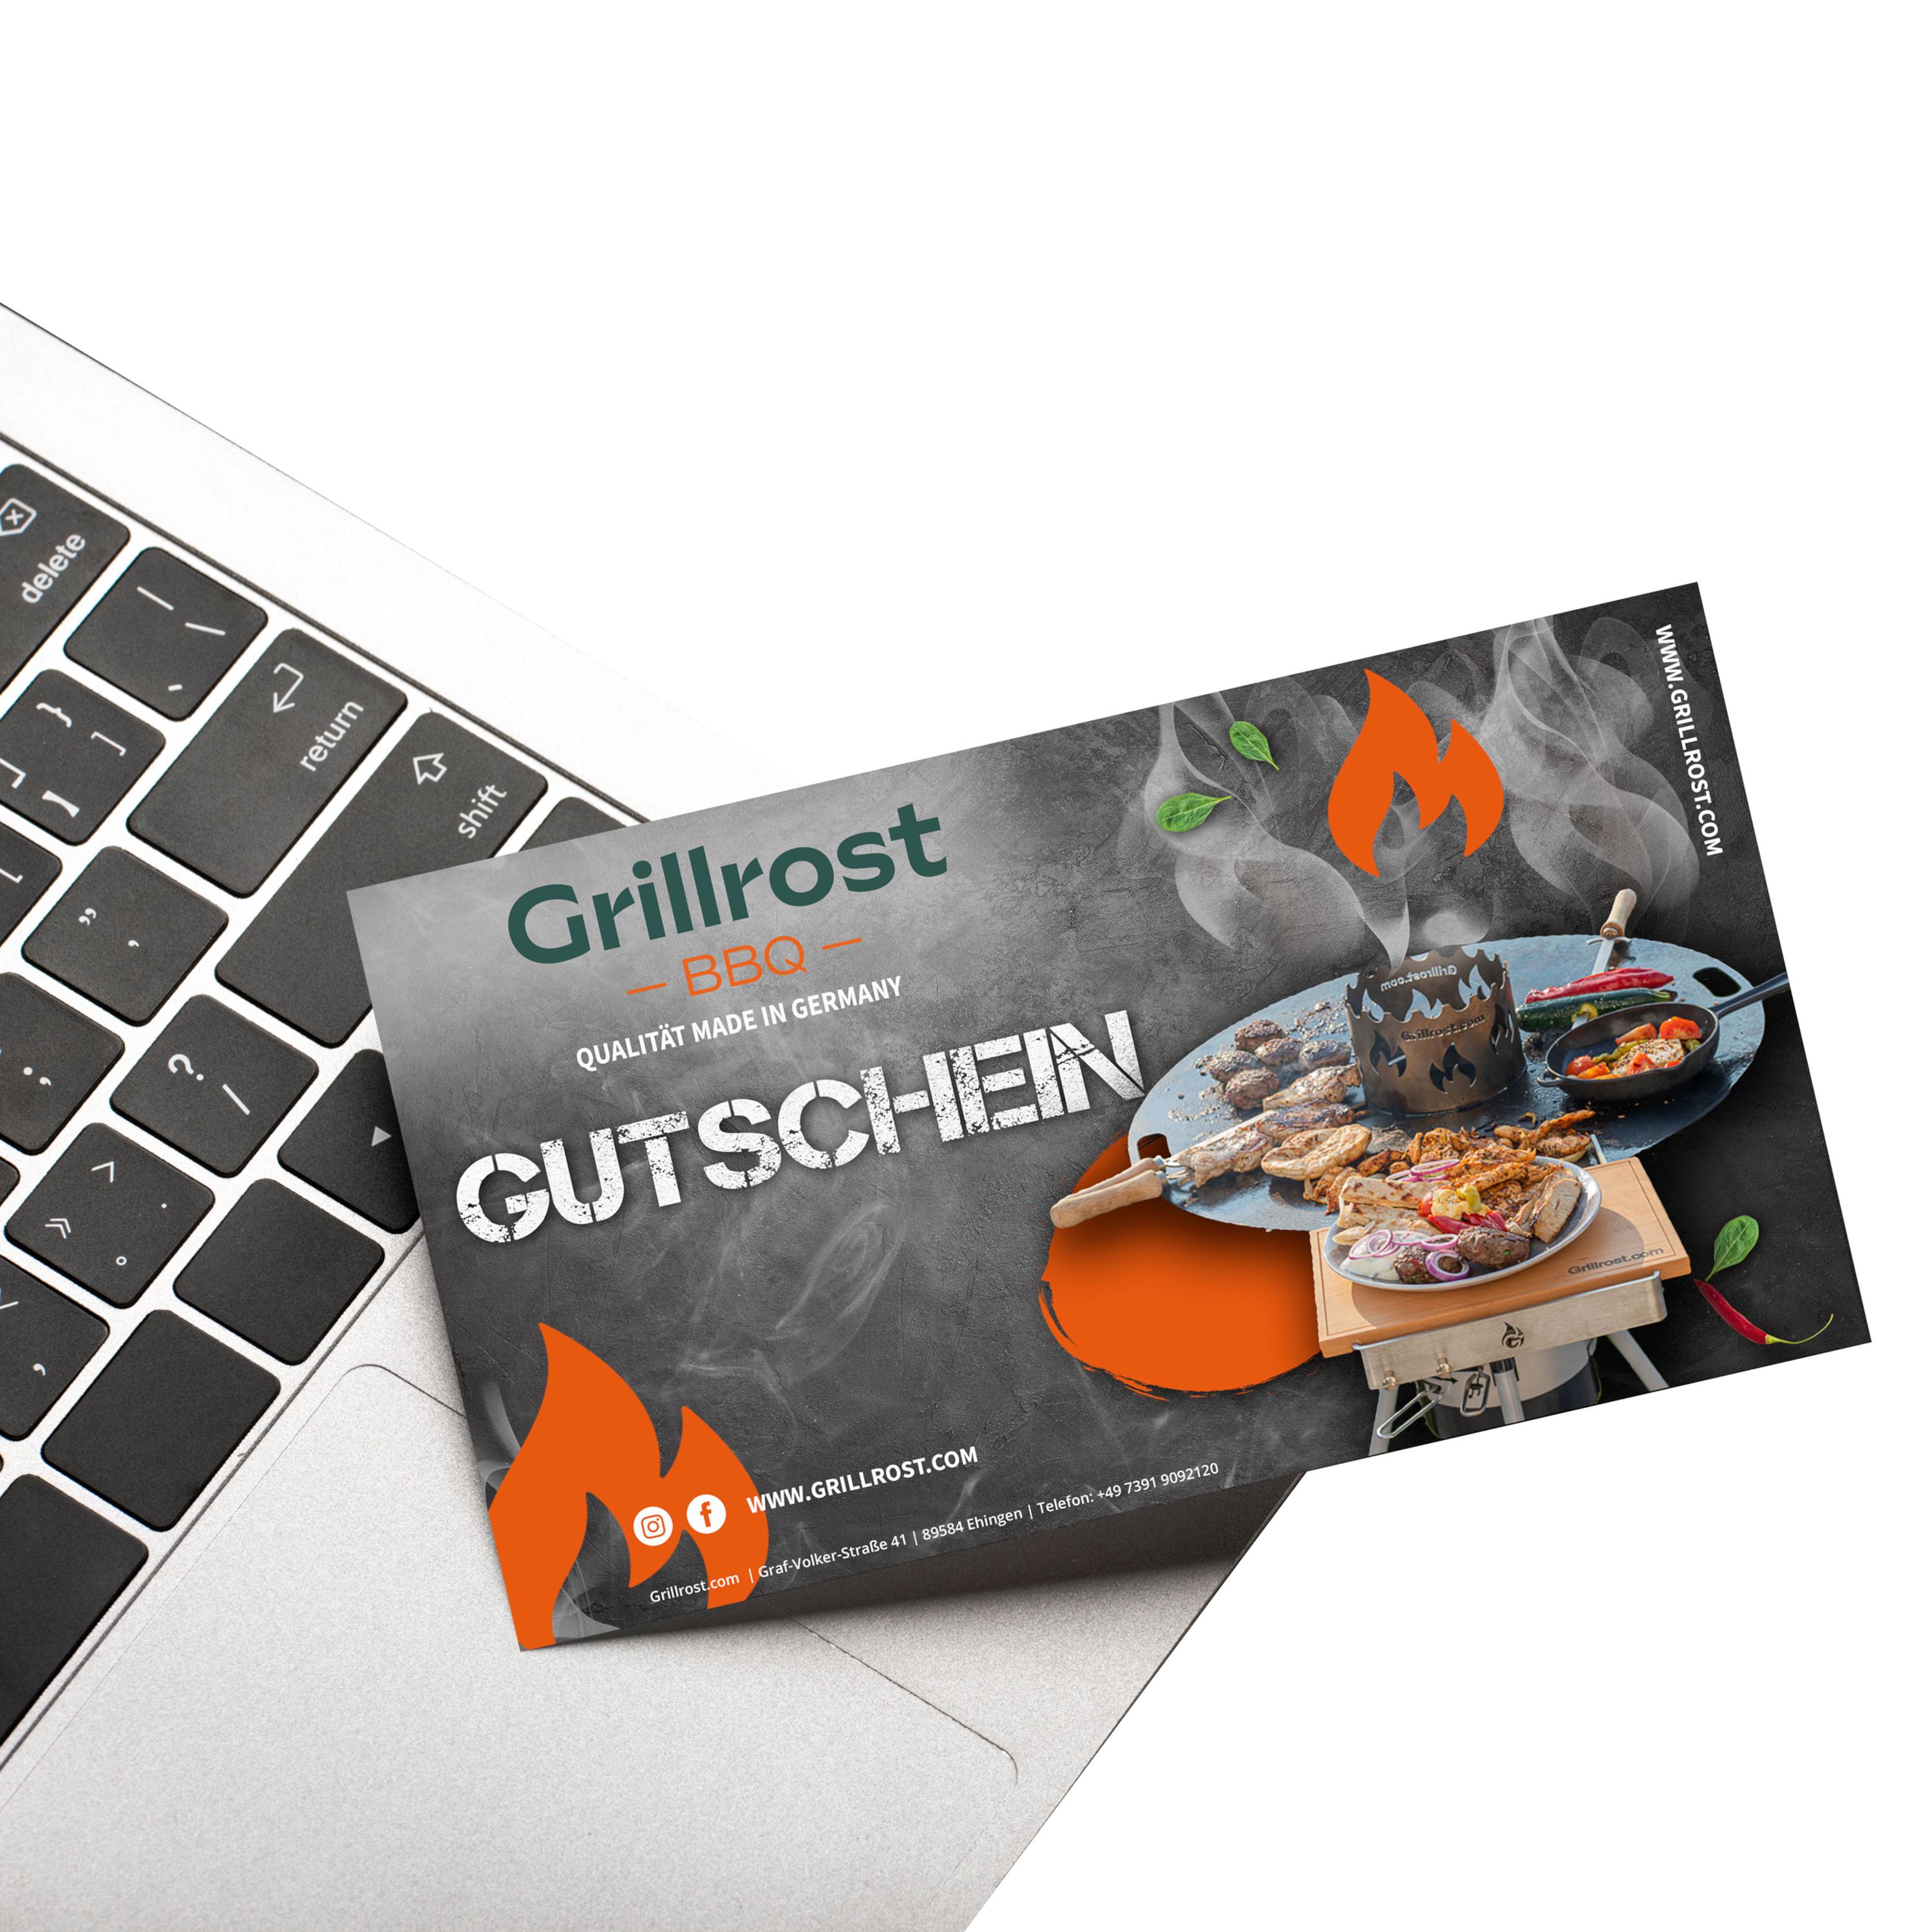 Bon d'achat pour Grillrost.com